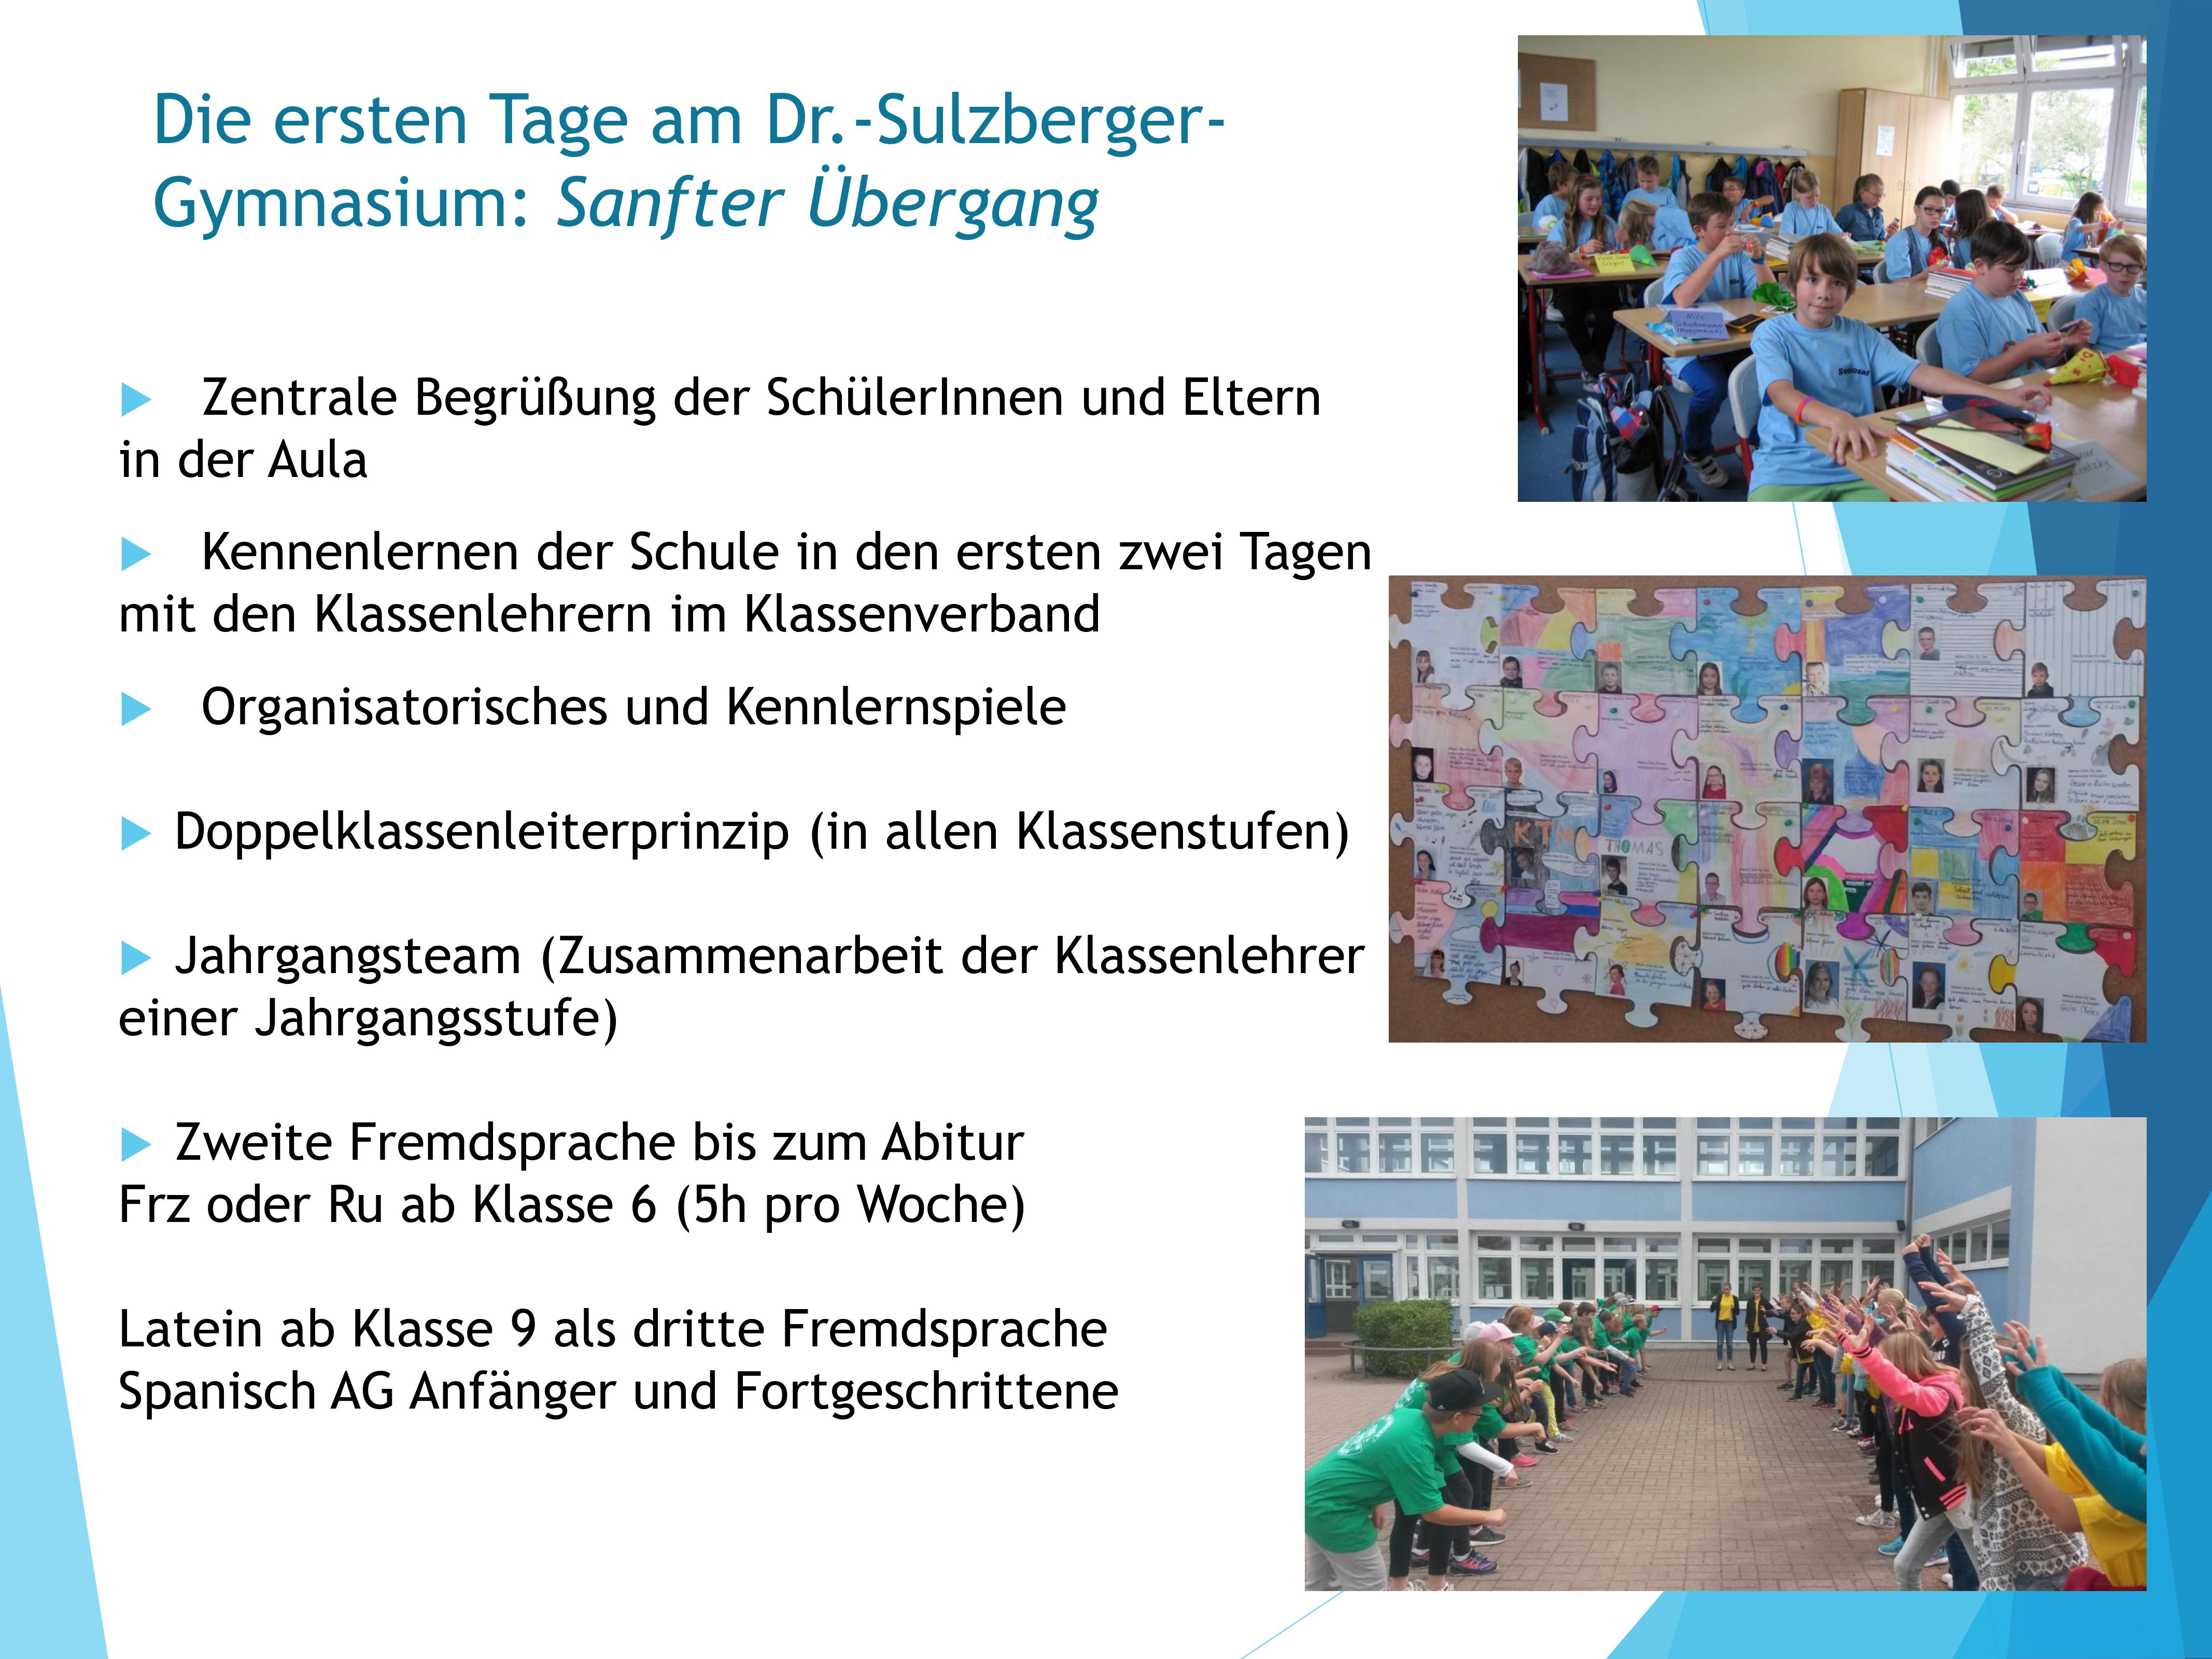 Dr.-Sulzberger-Gymnasium Bad Salzungen